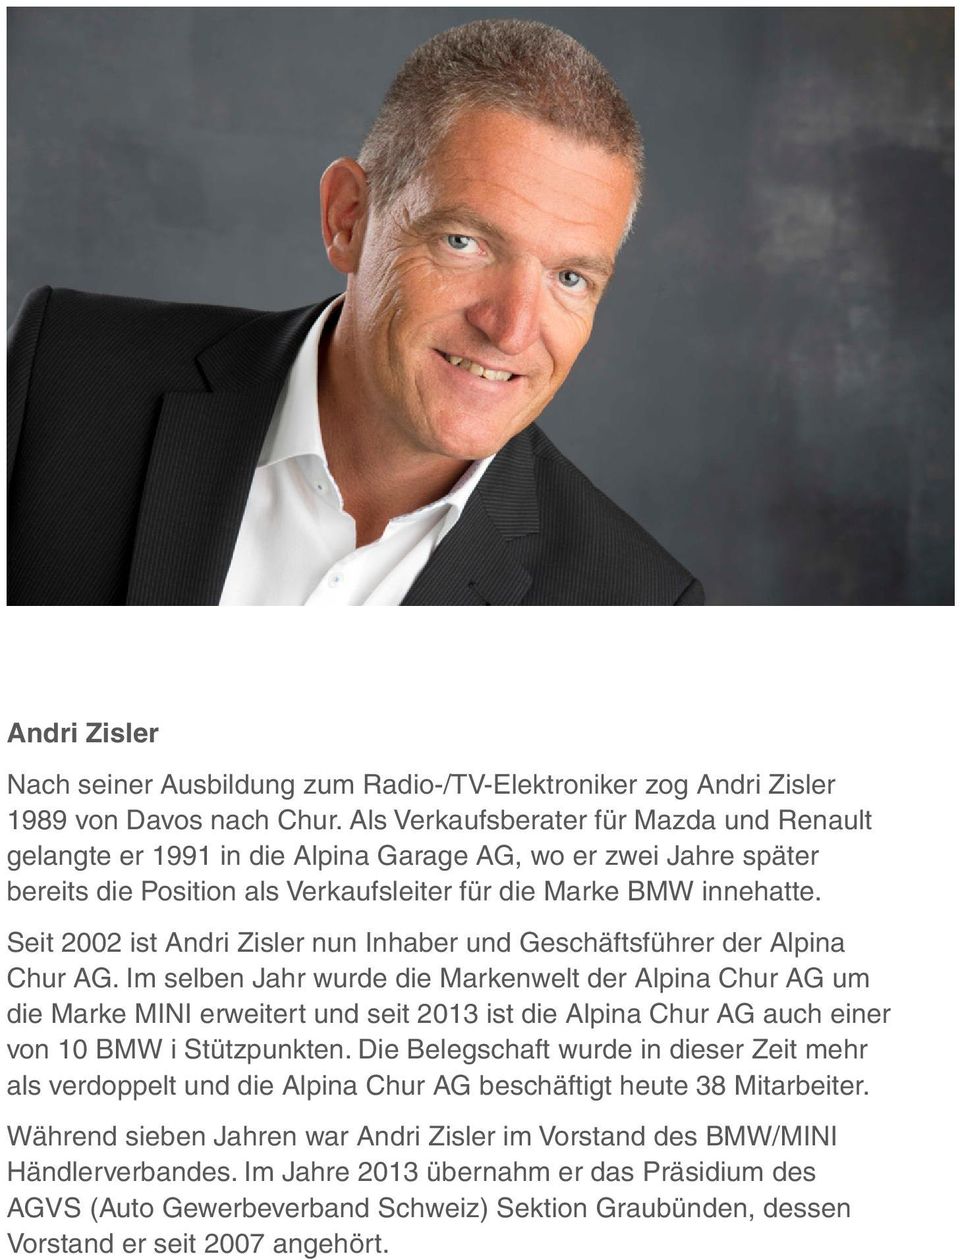 Seit 2002 ist Andri Zisler nun Inhaber und Geschäftsführer der Alpina Chur AG.